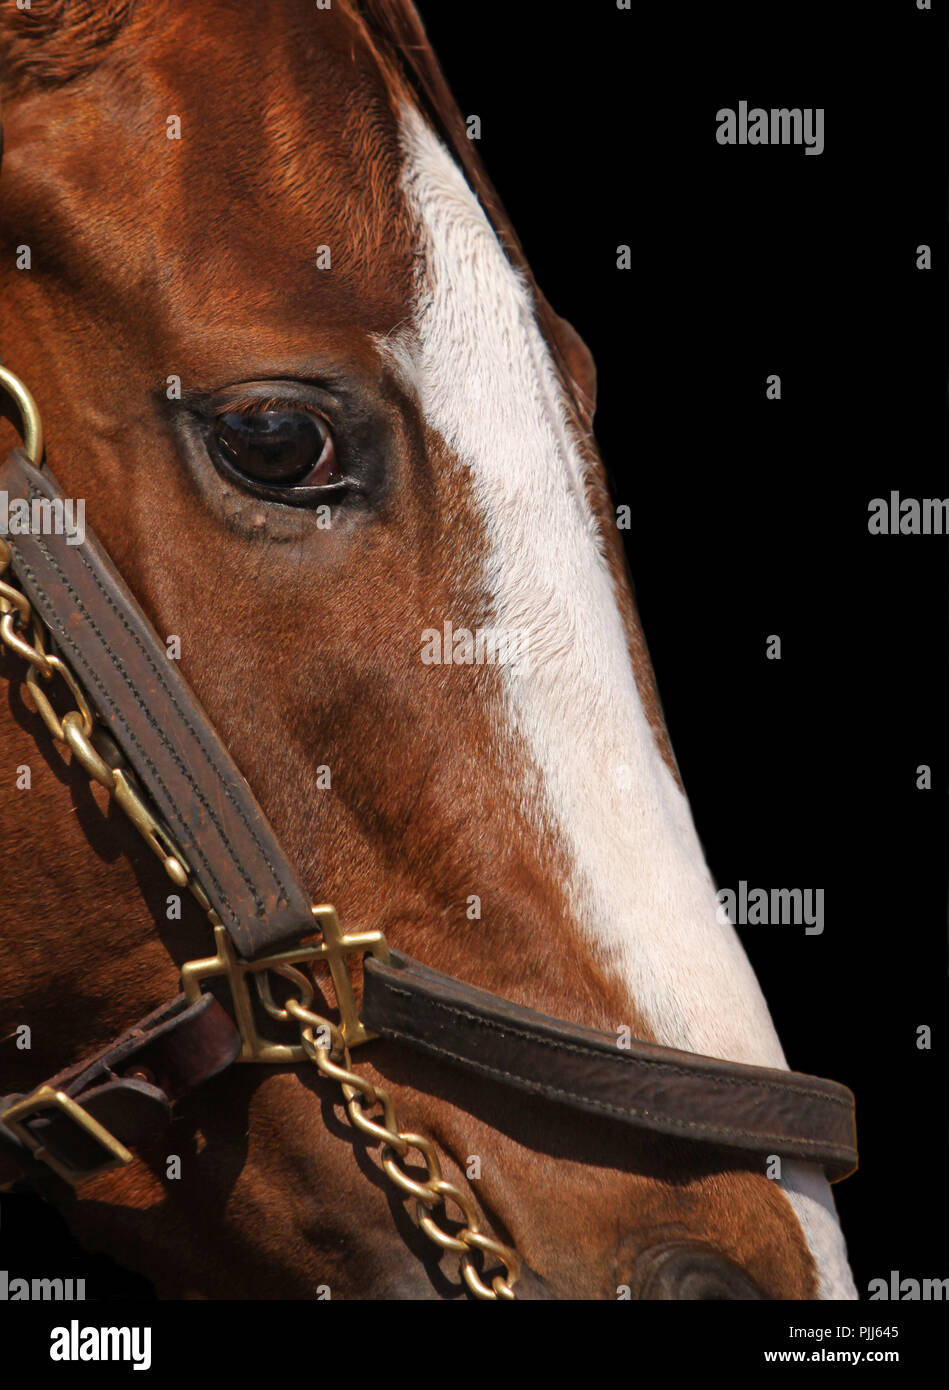 Close-up Gesicht der reinrassigen Rennpferd mit weißer Blesse tragen Zaumzeug. Foto auf schwarzem Hintergrund; Fokus auf Pferde Auge. Stockfoto